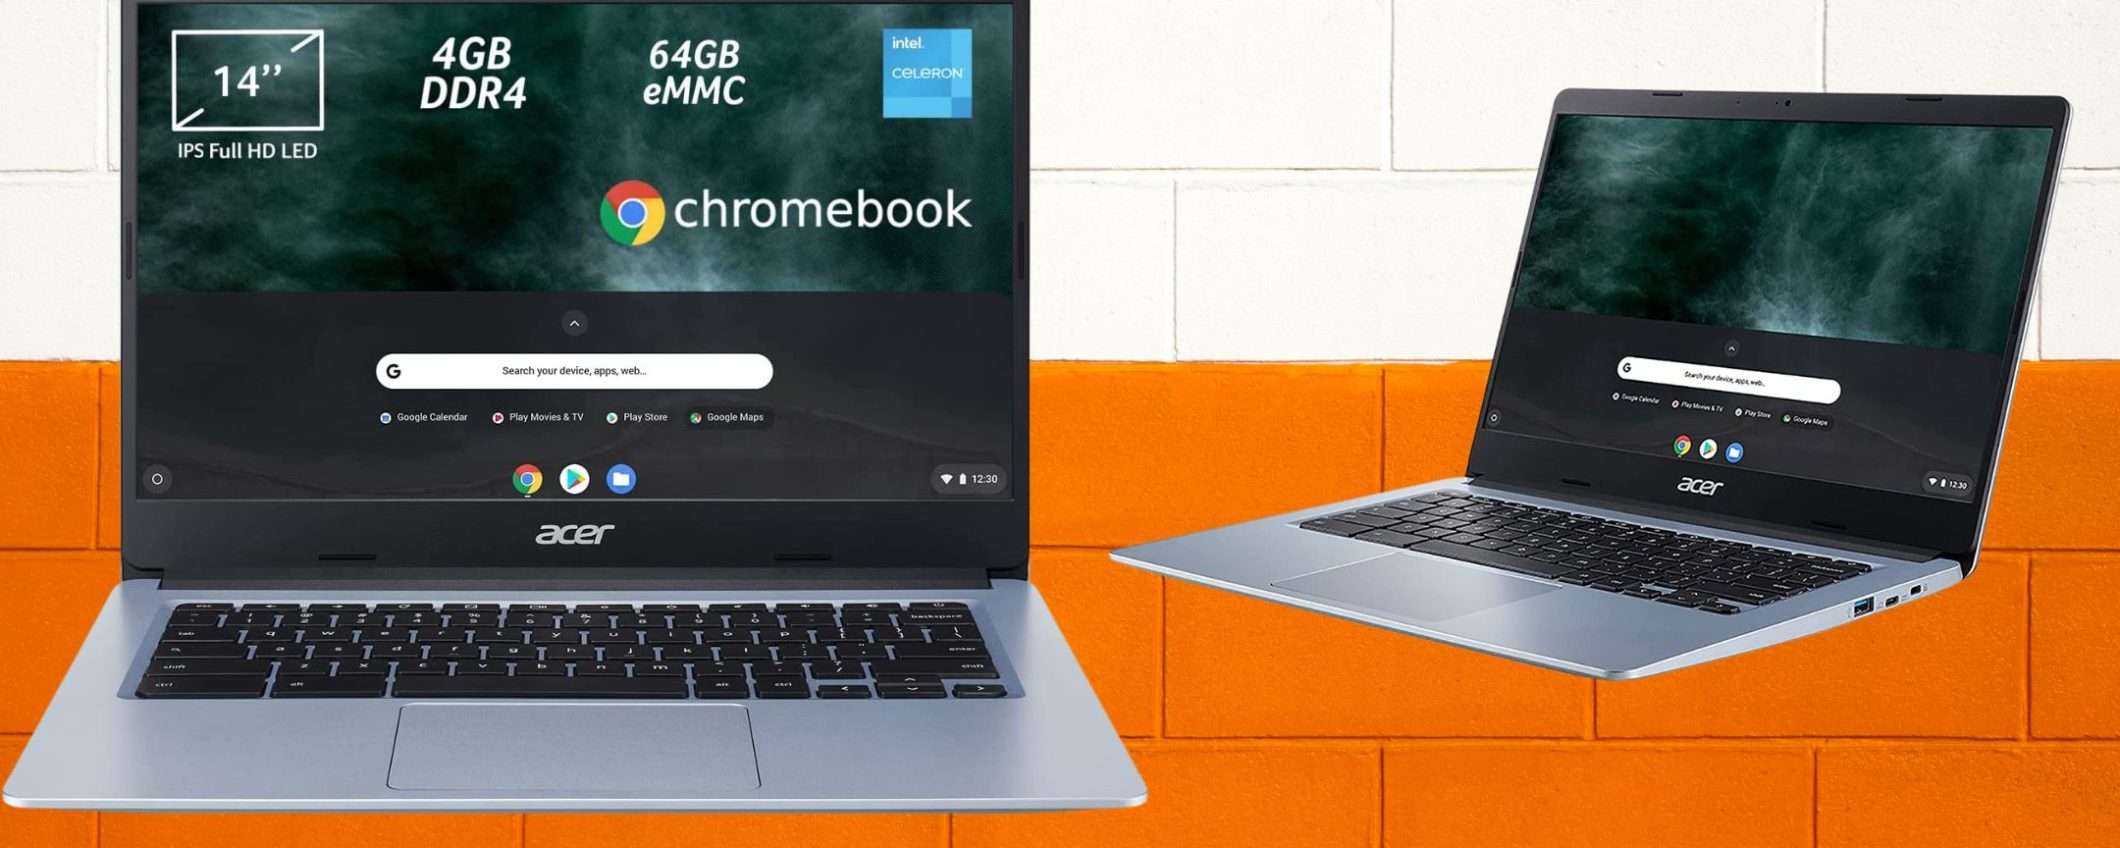 Chromebook Acer a 199€: Amazon POLVERIZZA il prezzo, svuota magazzino (-40%)